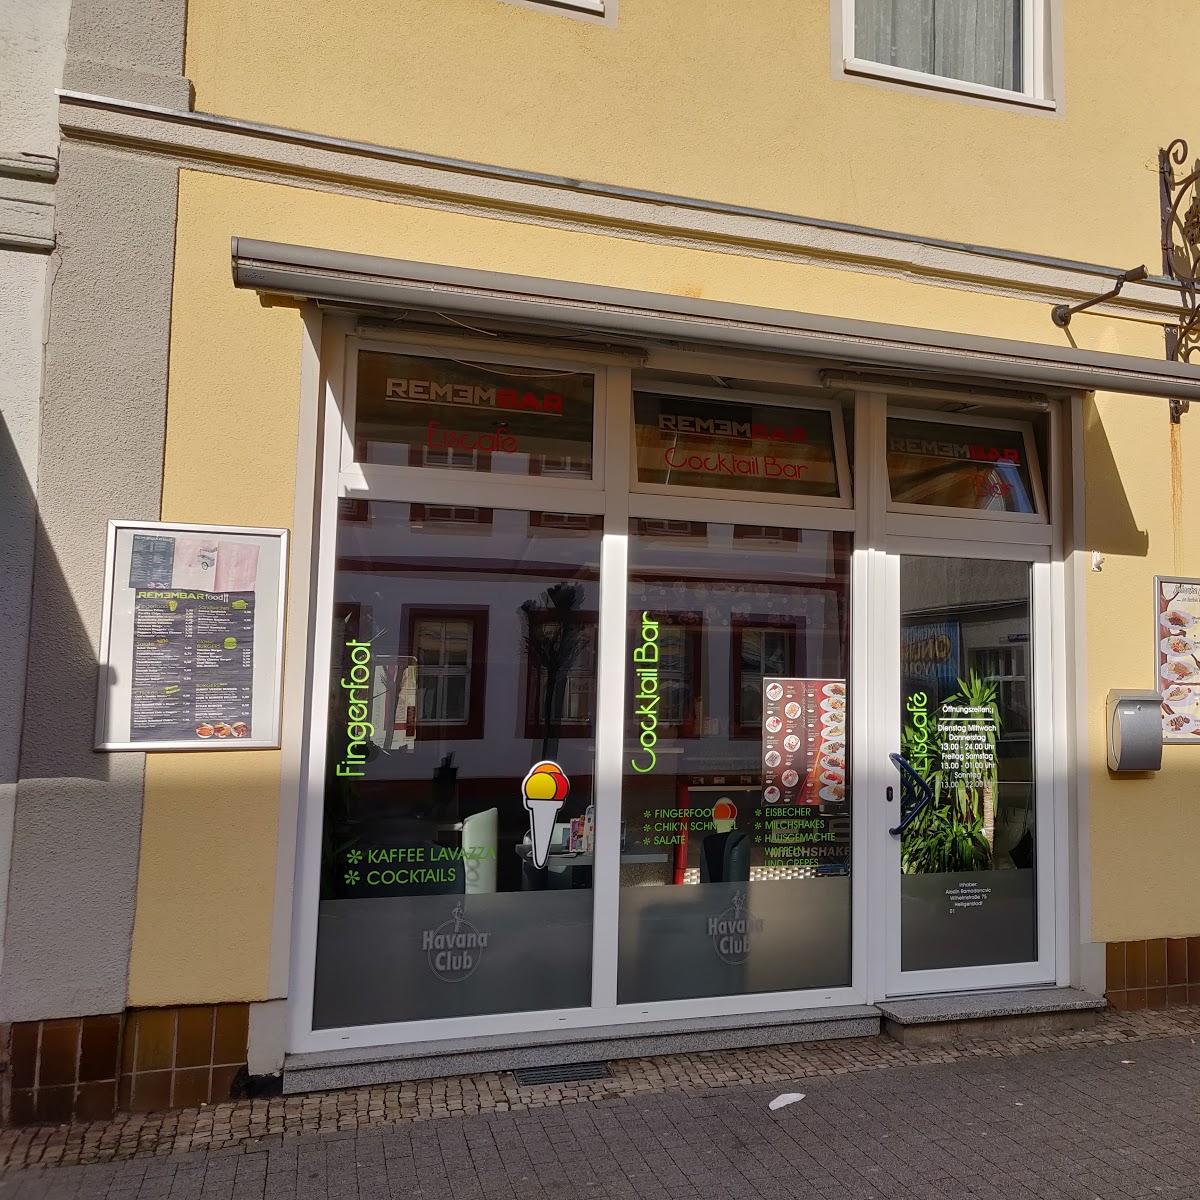 Restaurant "Remembar" in Heilbad Heiligenstadt